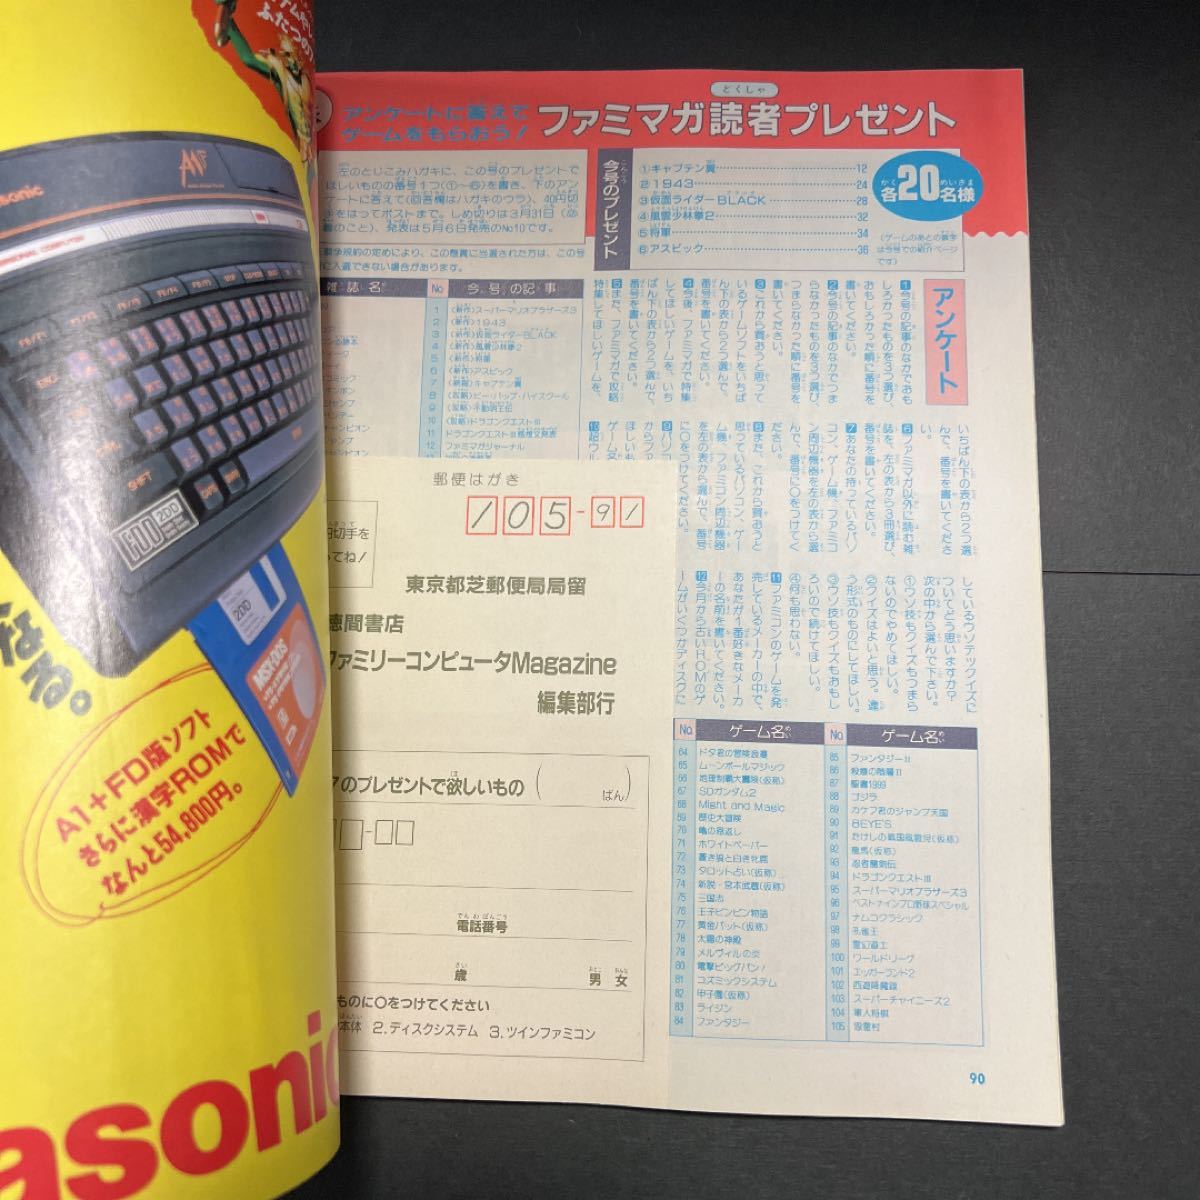 ファミリーコンピューター 1988年7月1日号 vol.7